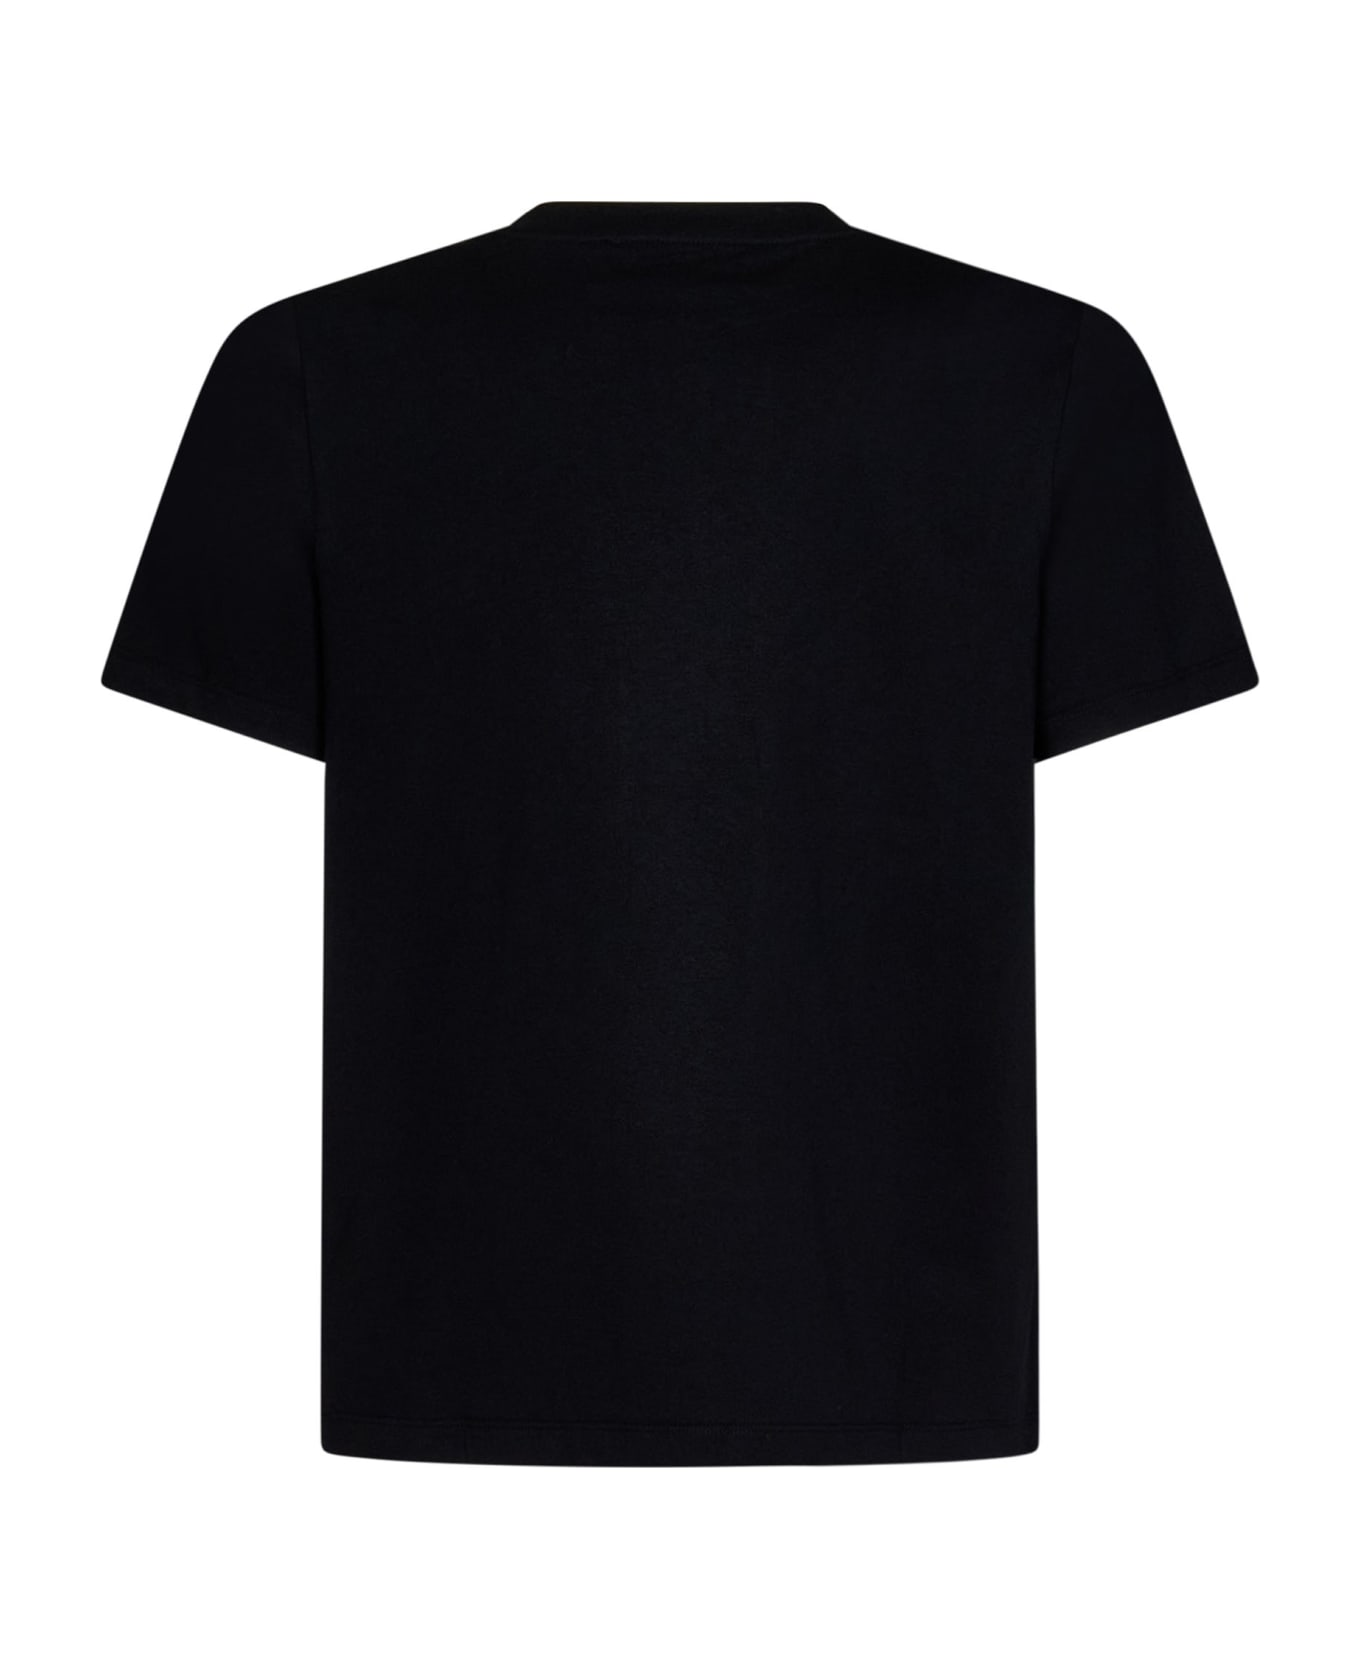 Coperni T-shirt - BLACK